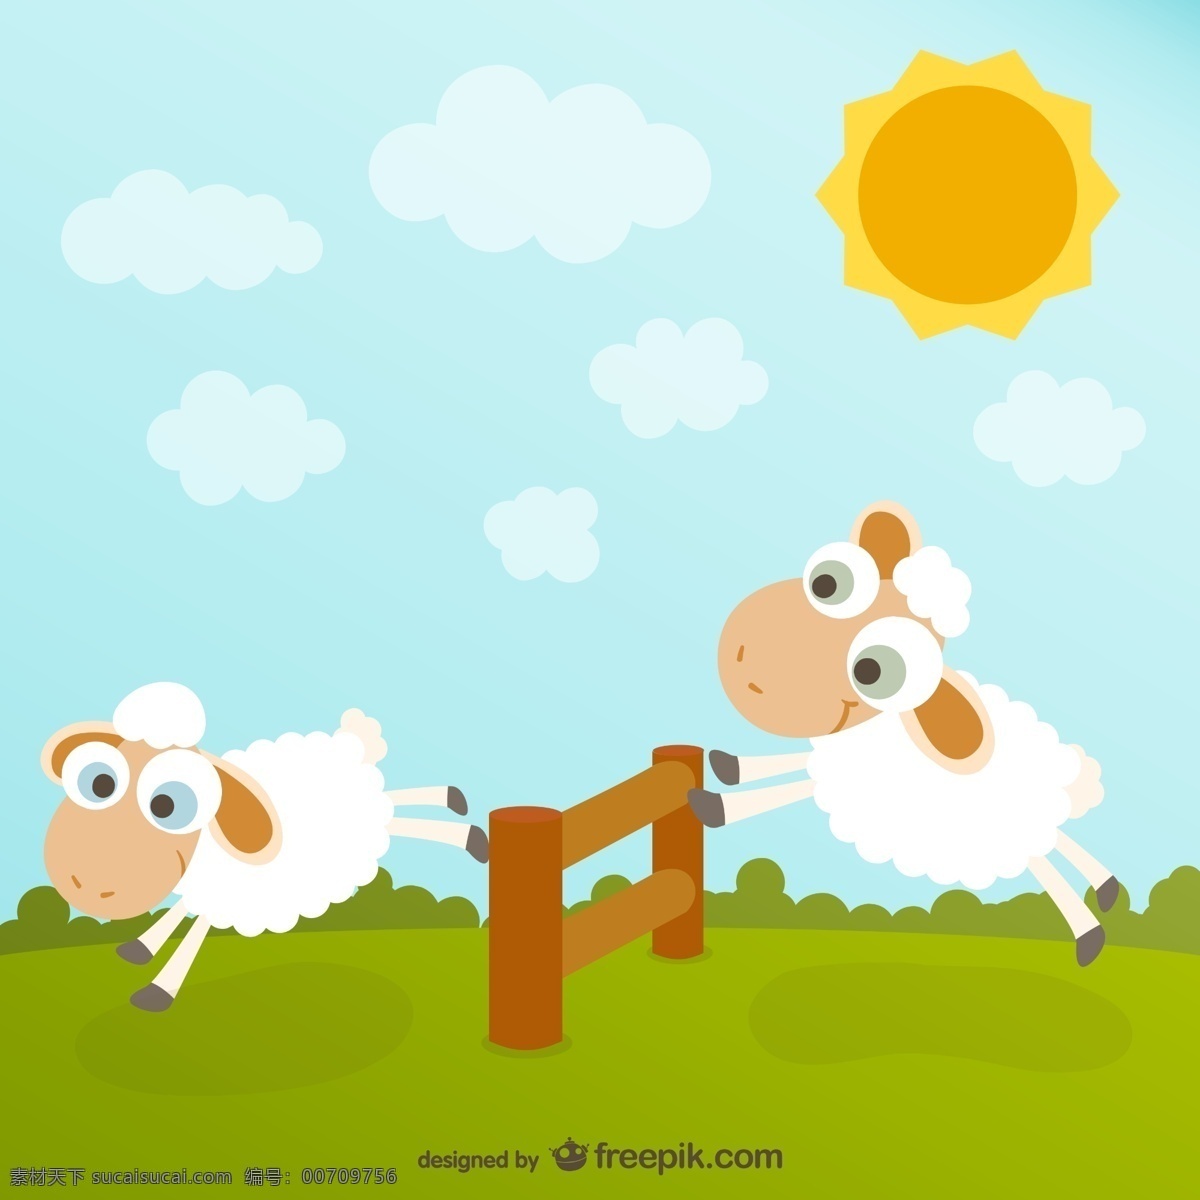 可爱小羊 太阳下的小羊 小羊矢量素材 肖恩素材 小羊游戏 卡通小羊 青色 天蓝色